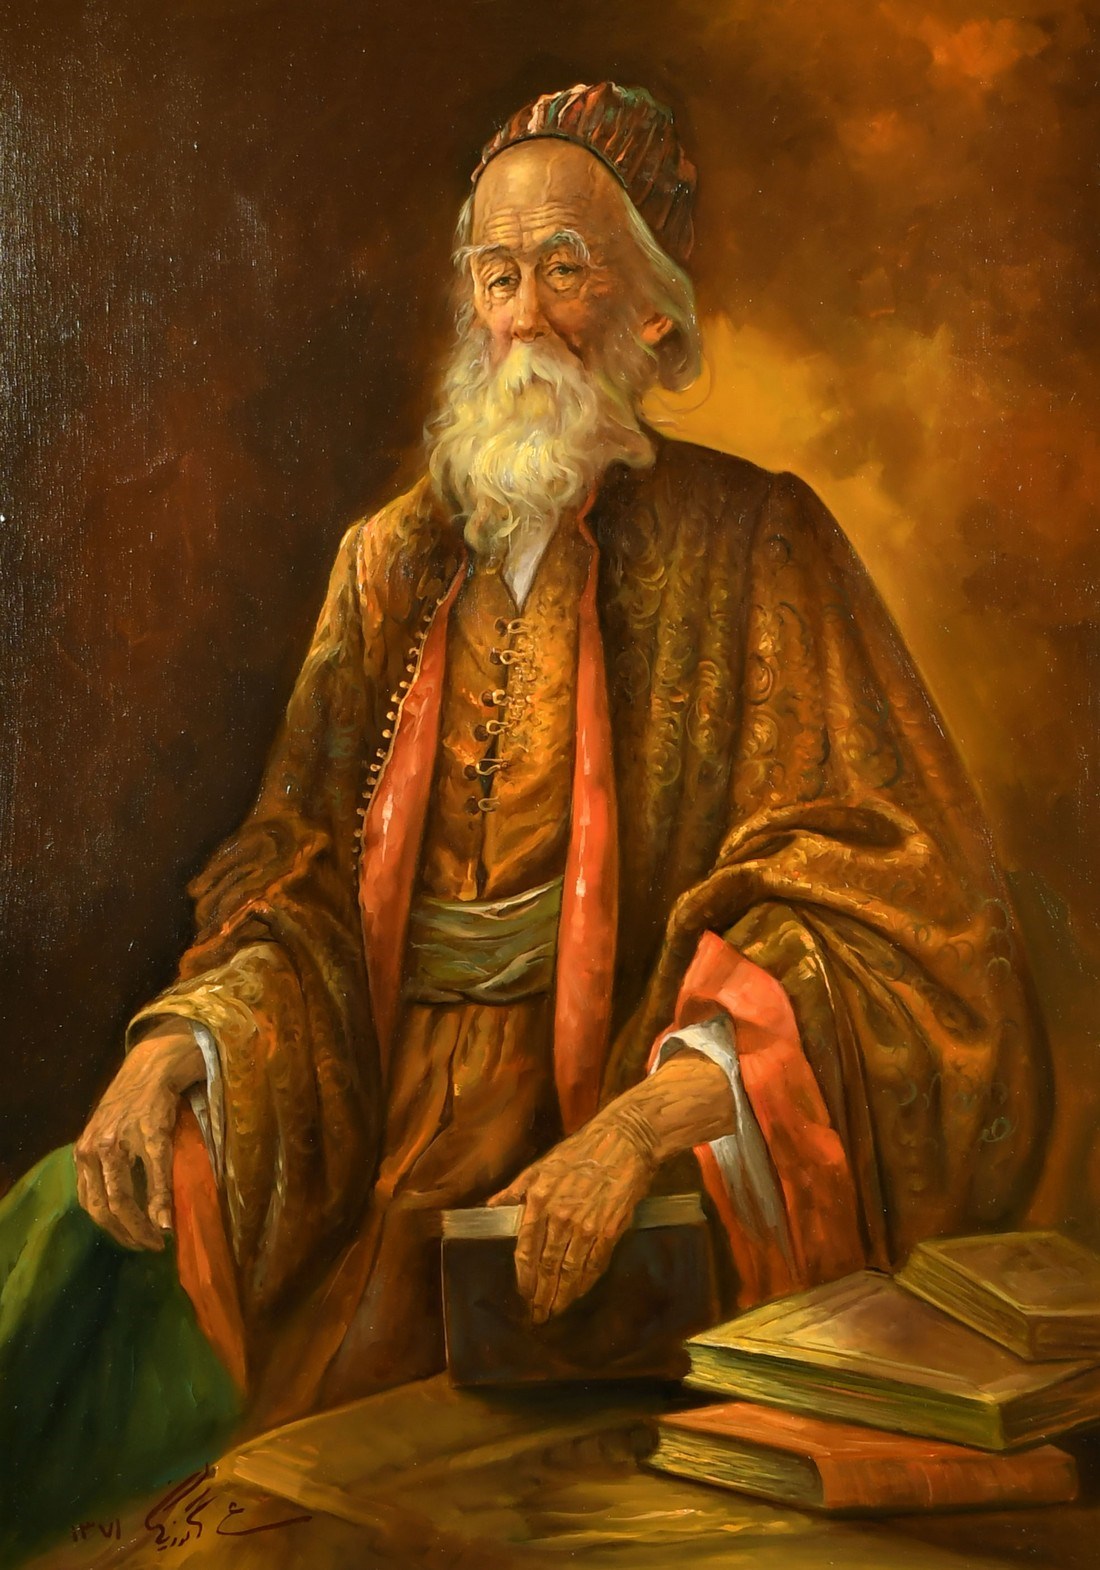 Abbas Katouzian